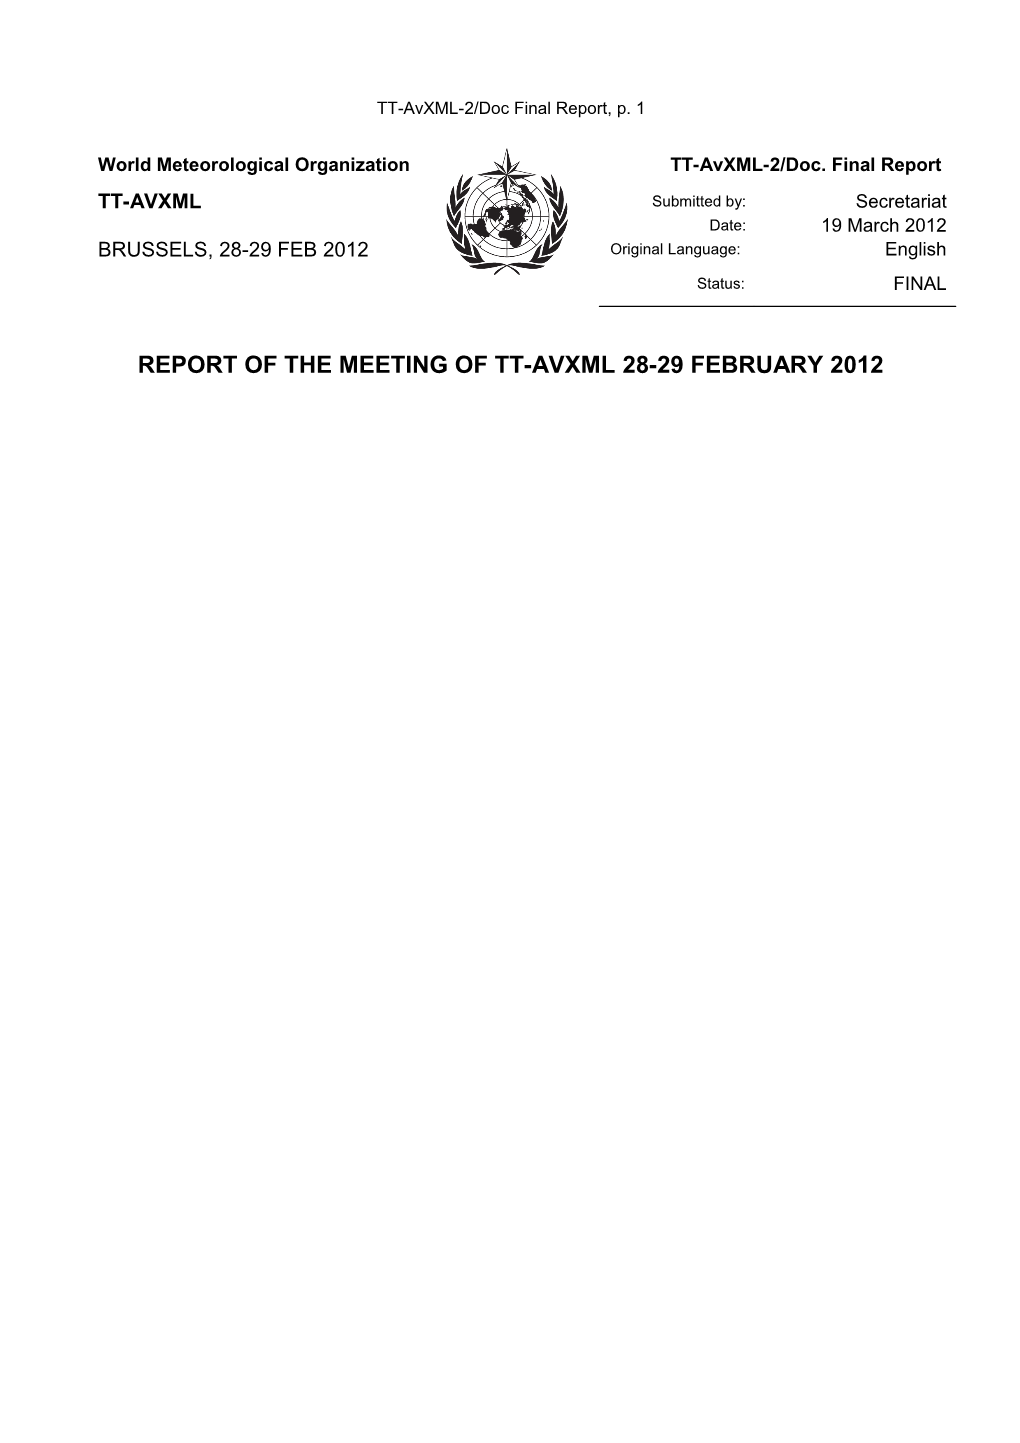 Report of the Meeting of TT-Avxml 28-29 February 2012